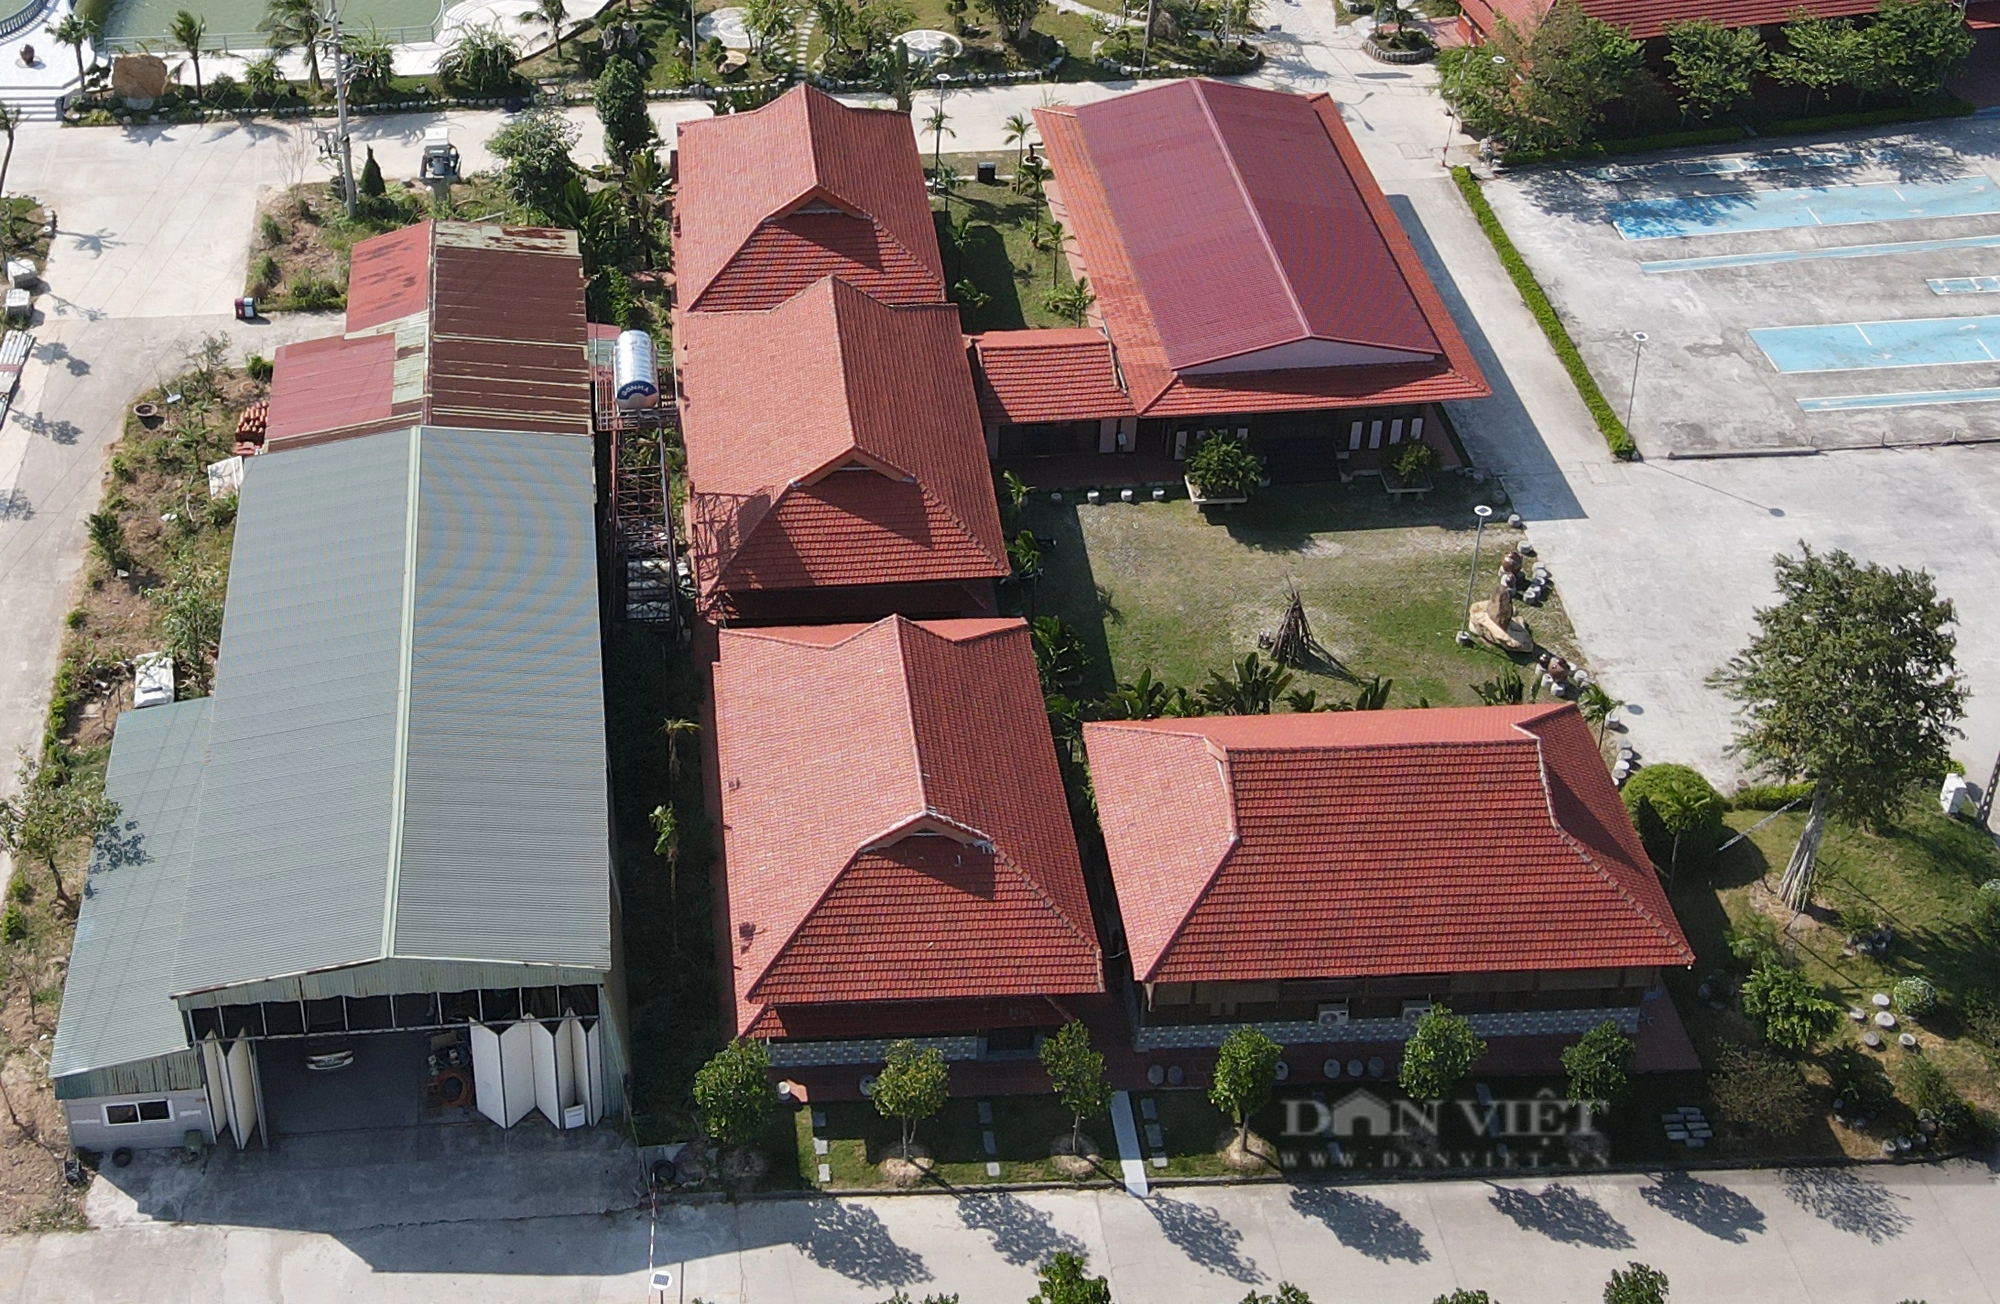 Trung tâm dạy nghề và sát hạch lái xe Đông Đô (Bắc Ninh) sử dụng hàng nghìn m2 đất không đúng mục đích - Ảnh 6.